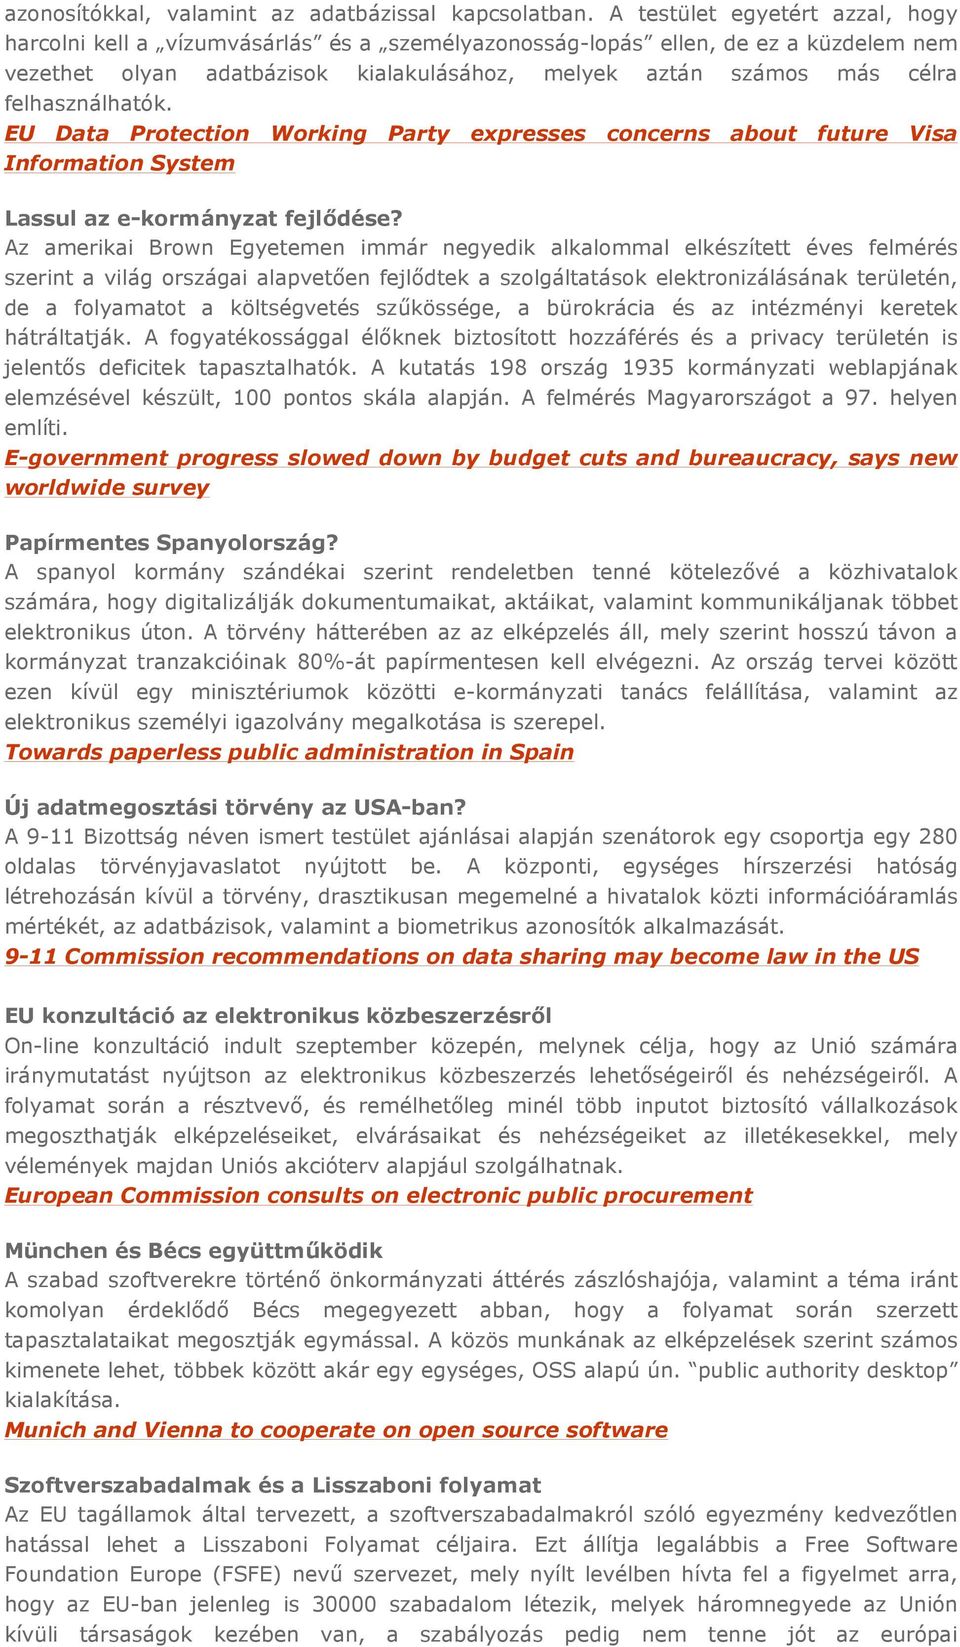 felhasználhatók. EU Data Protection Working Party expresses concerns about future Visa Information System Lassul az e-kormányzat fejlıdése?